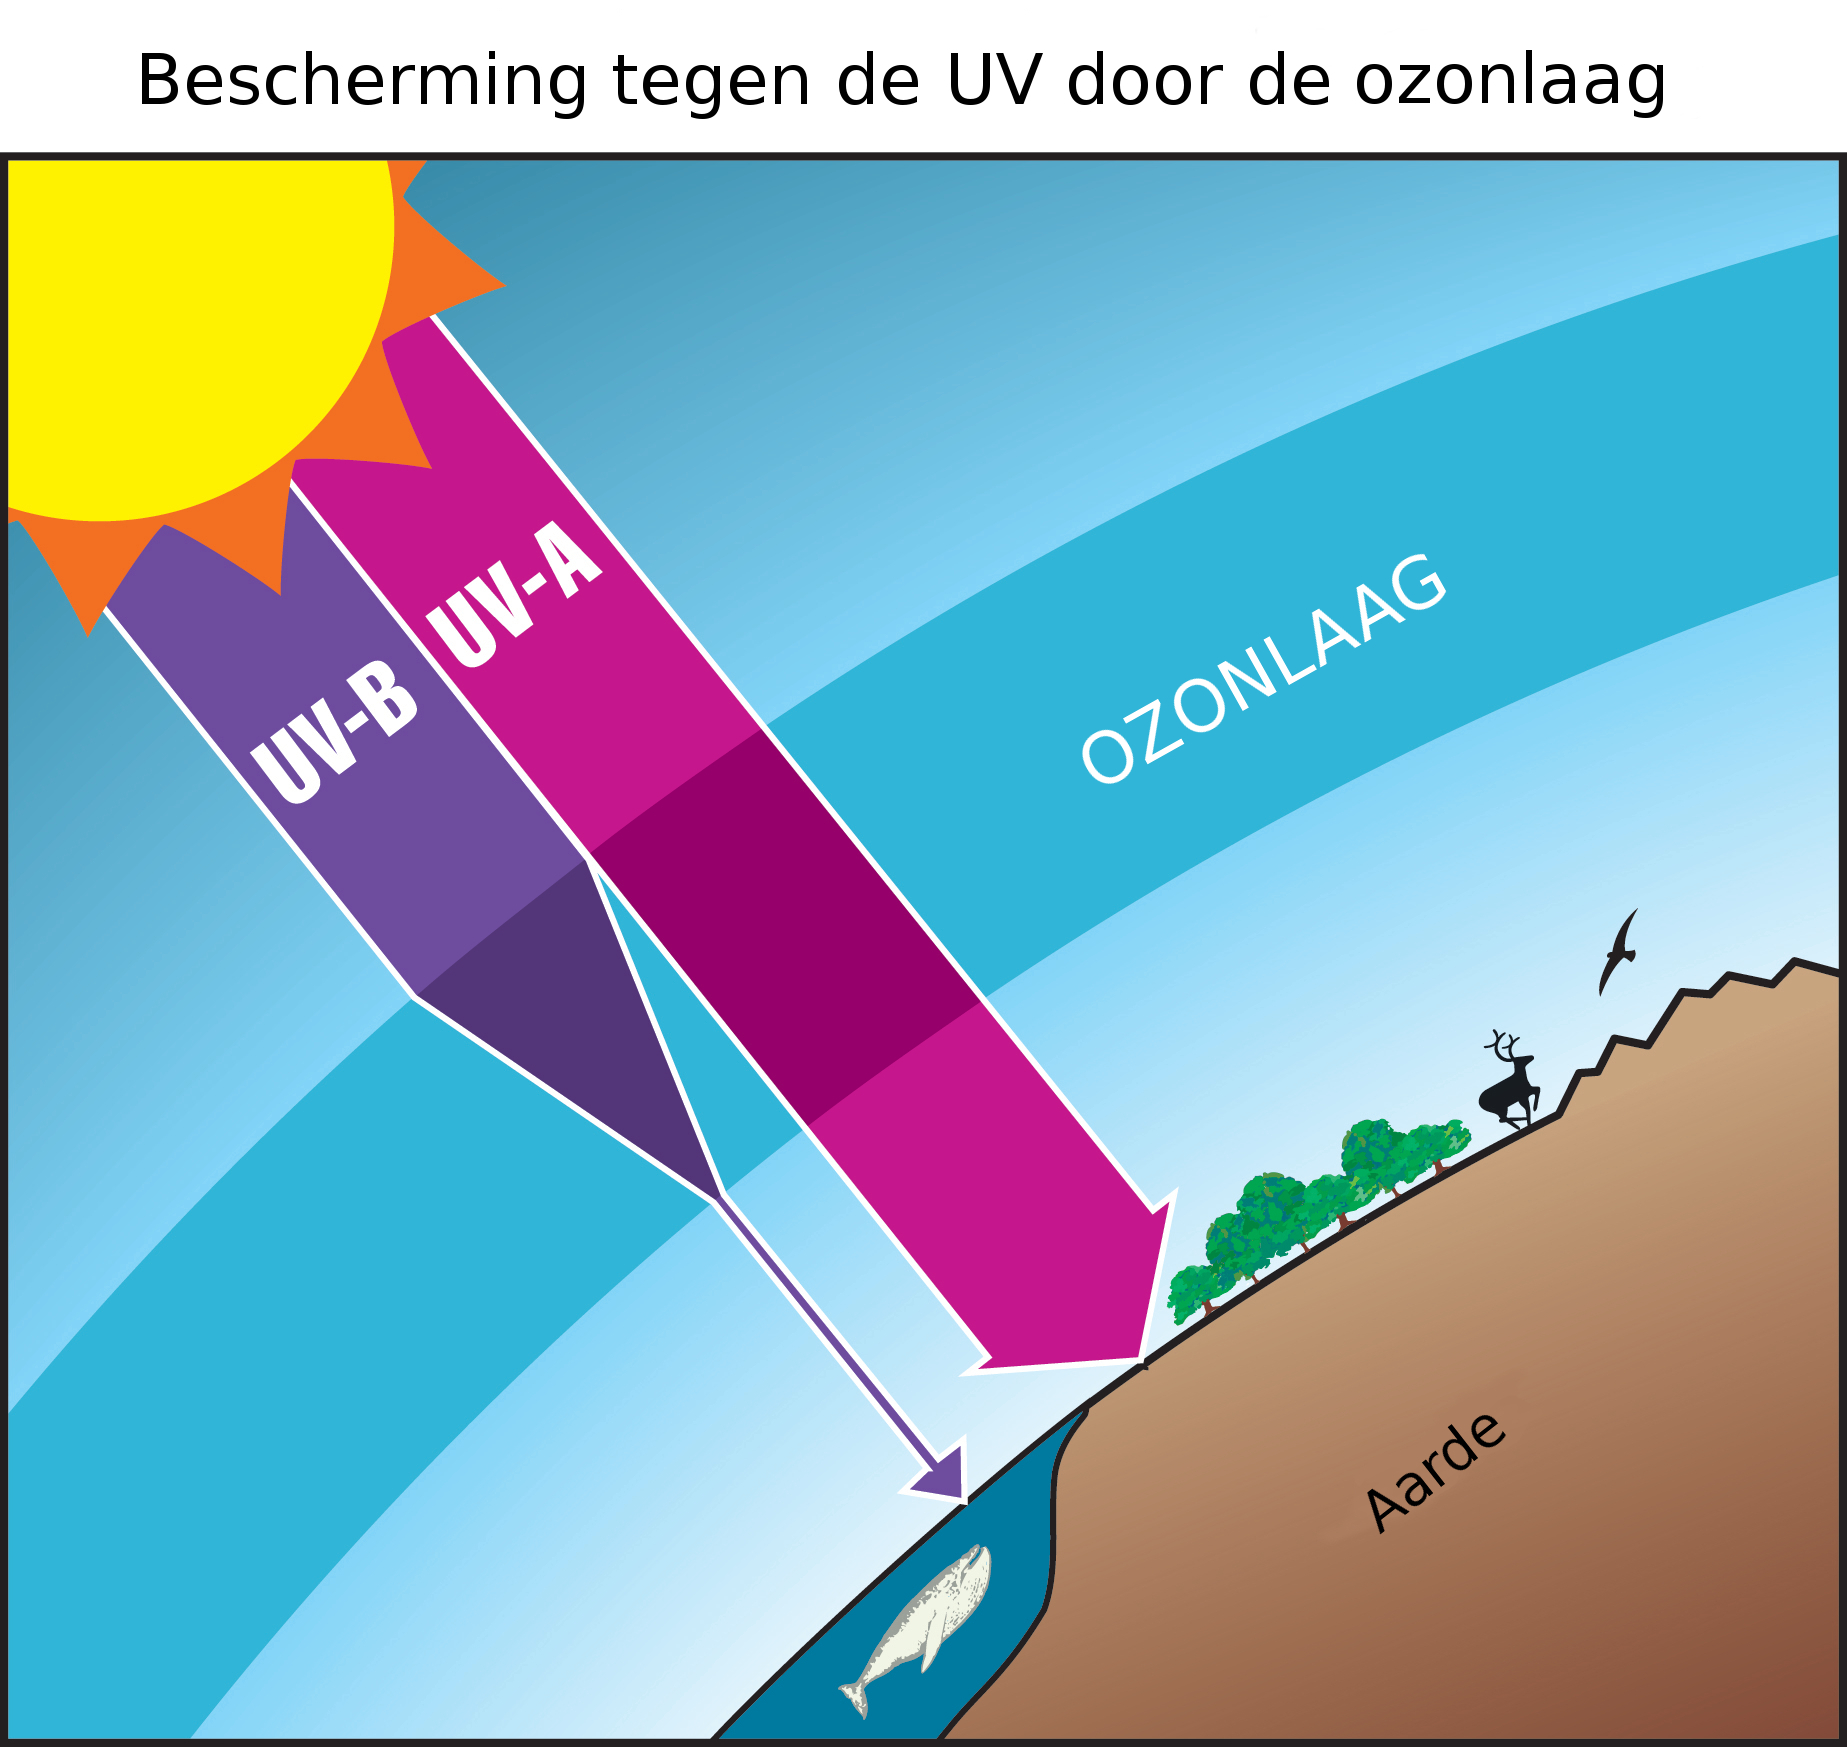 De uv B-stralen van de zon worden deels geabsorbeerd door de ozonlaag, terwijl de uv A-stralen bijna volledig worden doorgelaten.